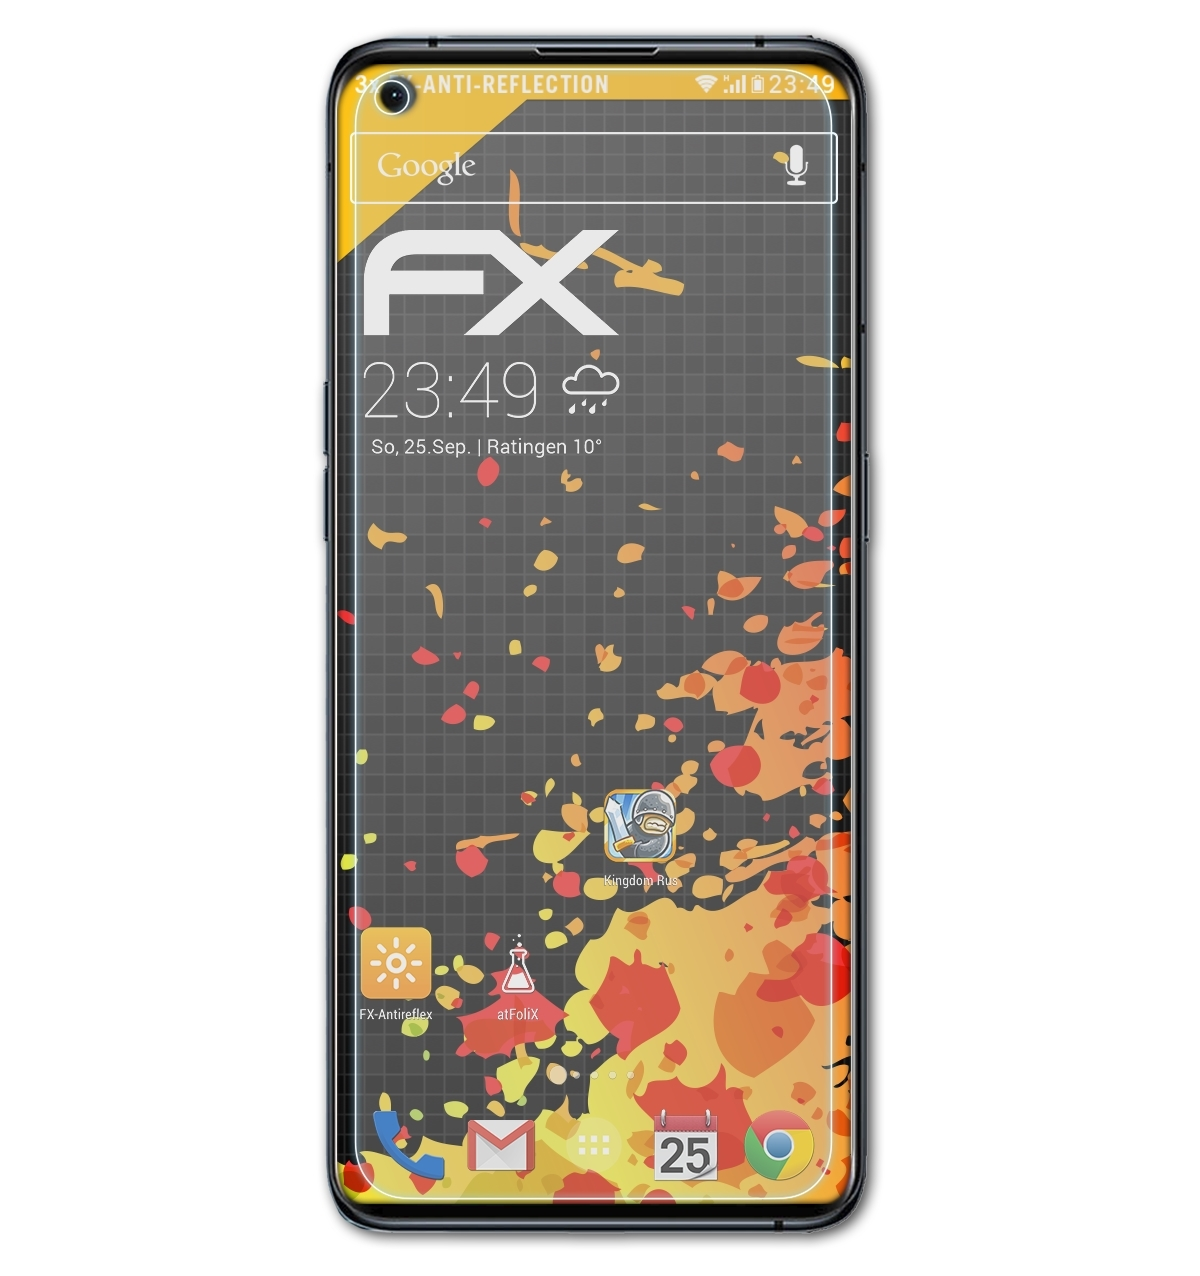 X3 Displayschutz(für Pro) FX-Antireflex 3x Oppo Find ATFOLIX